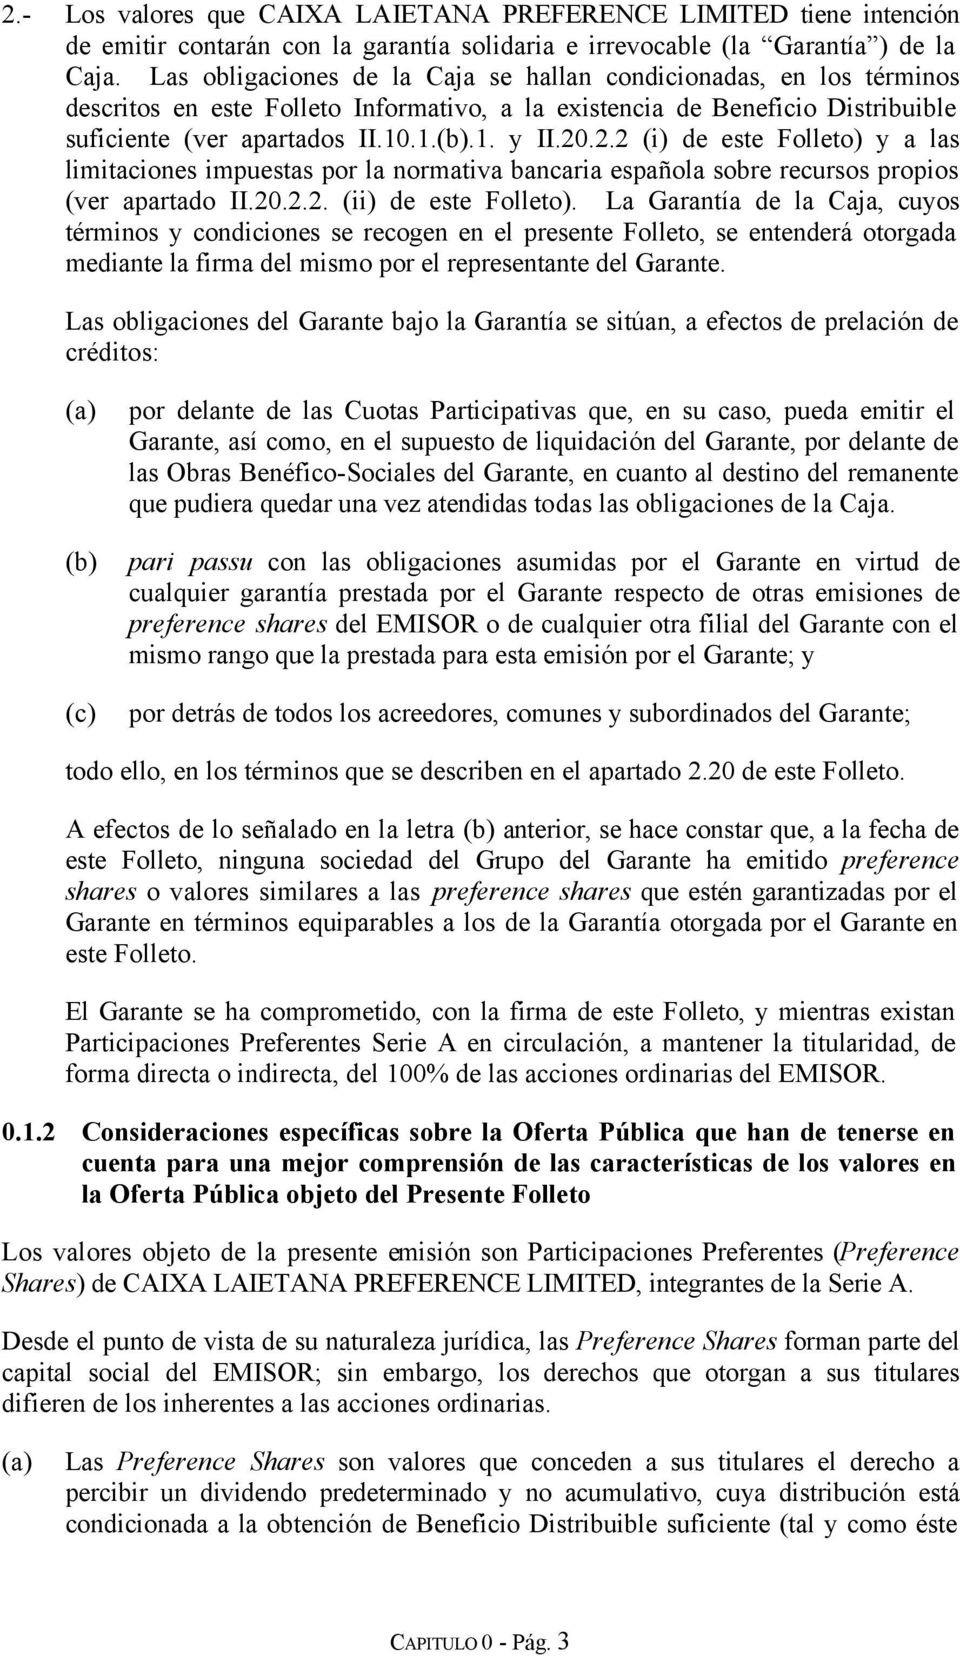 2.2 (i) de este Folleto) y a las limitaciones impuestas por la normativa bancaria española sobre recursos propios (ver apartado II.20.2.2. (ii) de este Folleto).